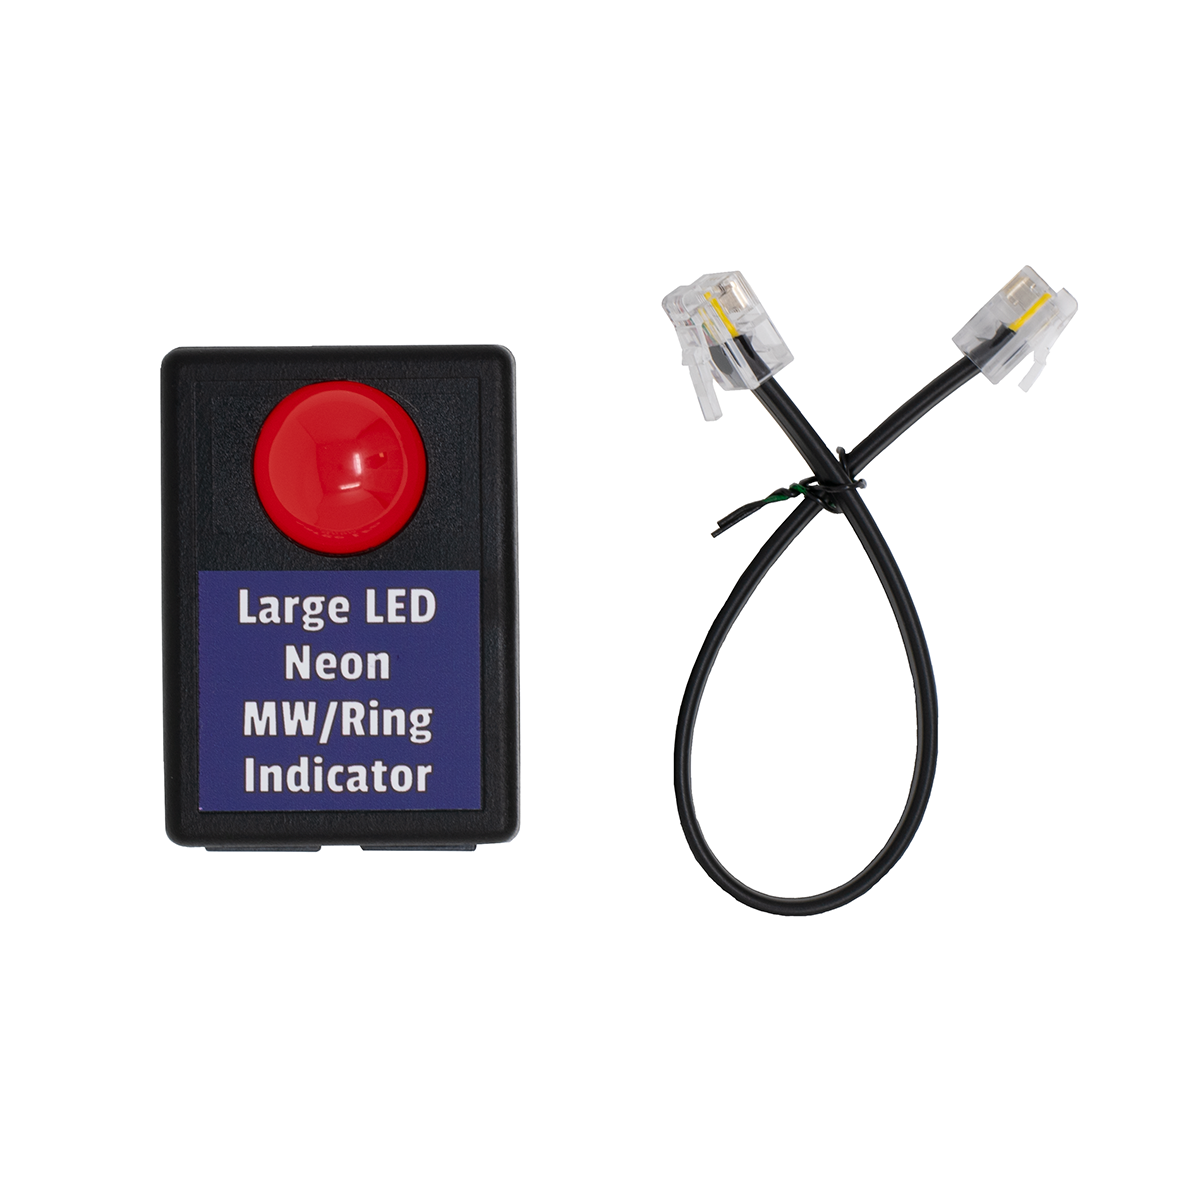 Modular Large LED Neon MW/Ring Indicator (Top View)